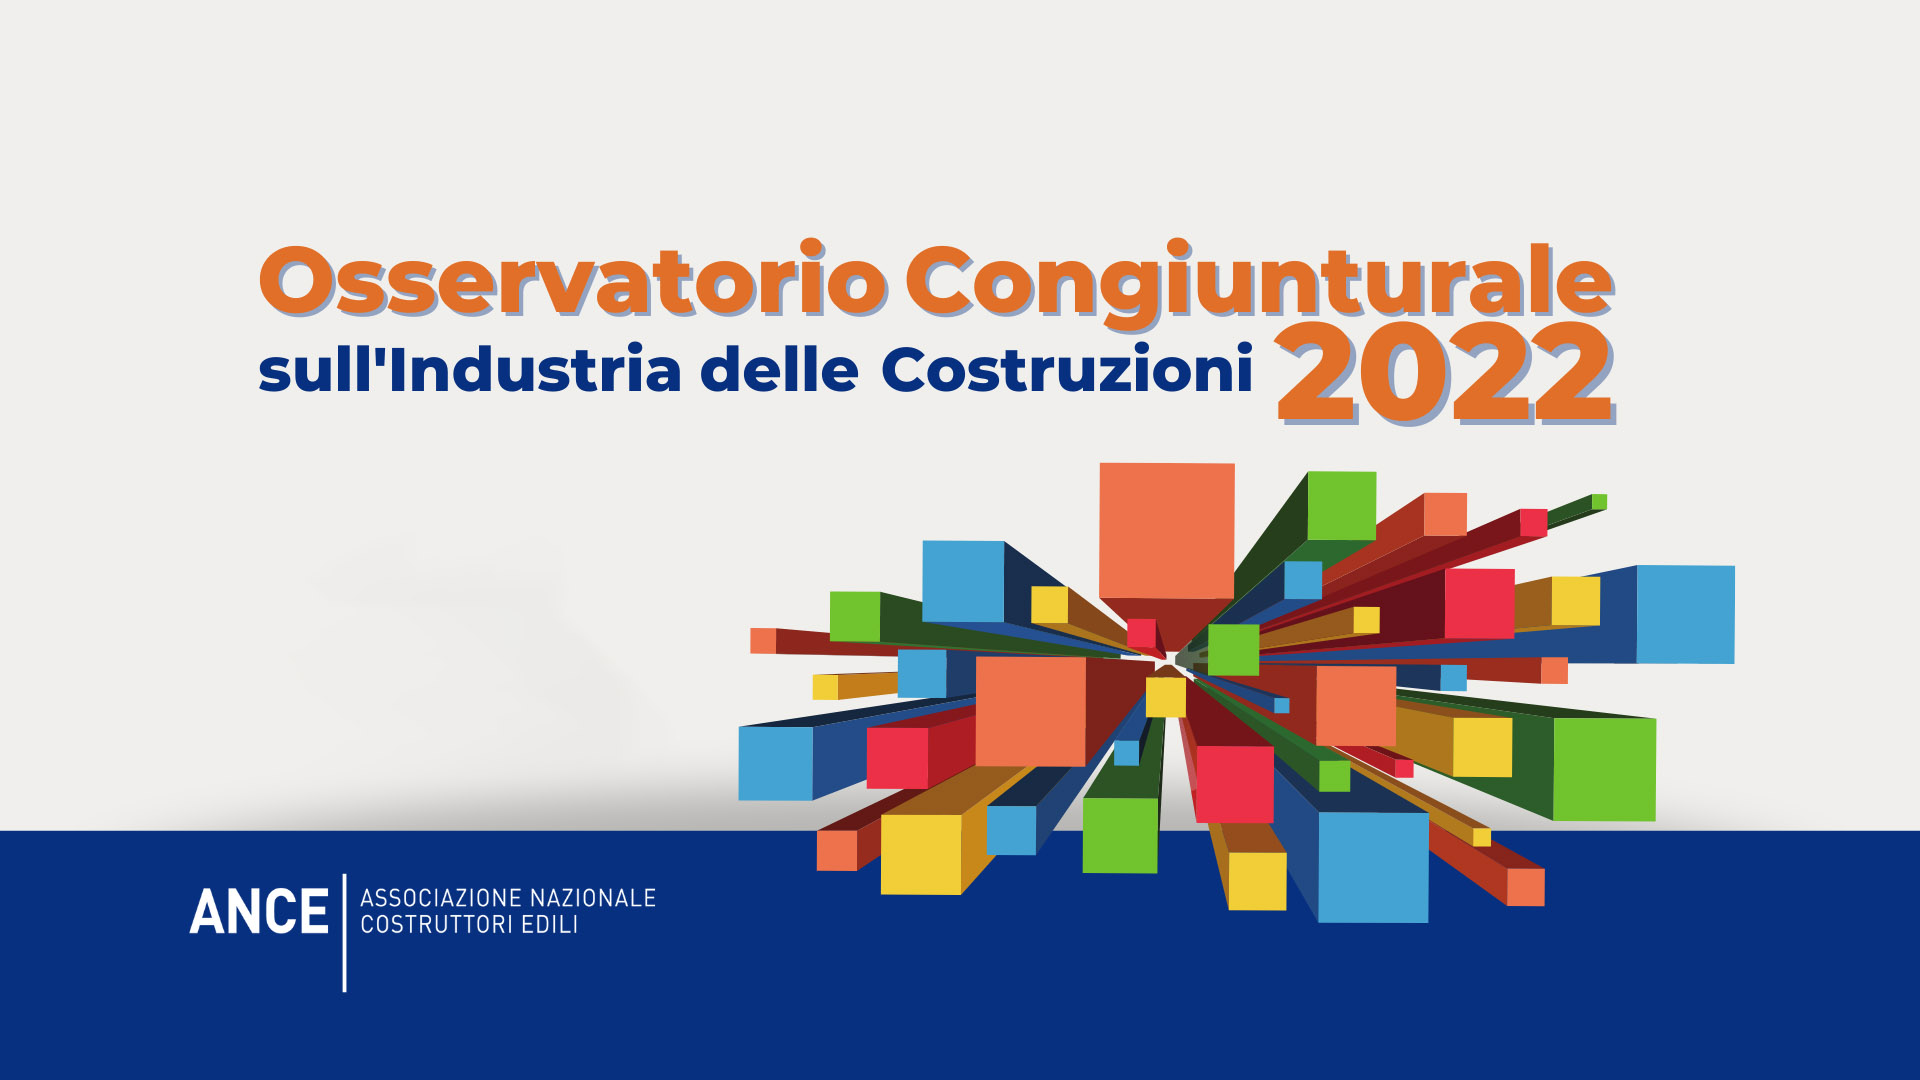 Osservatorio Congiunturale Ance sull'Industria delle Costruzioni 2022